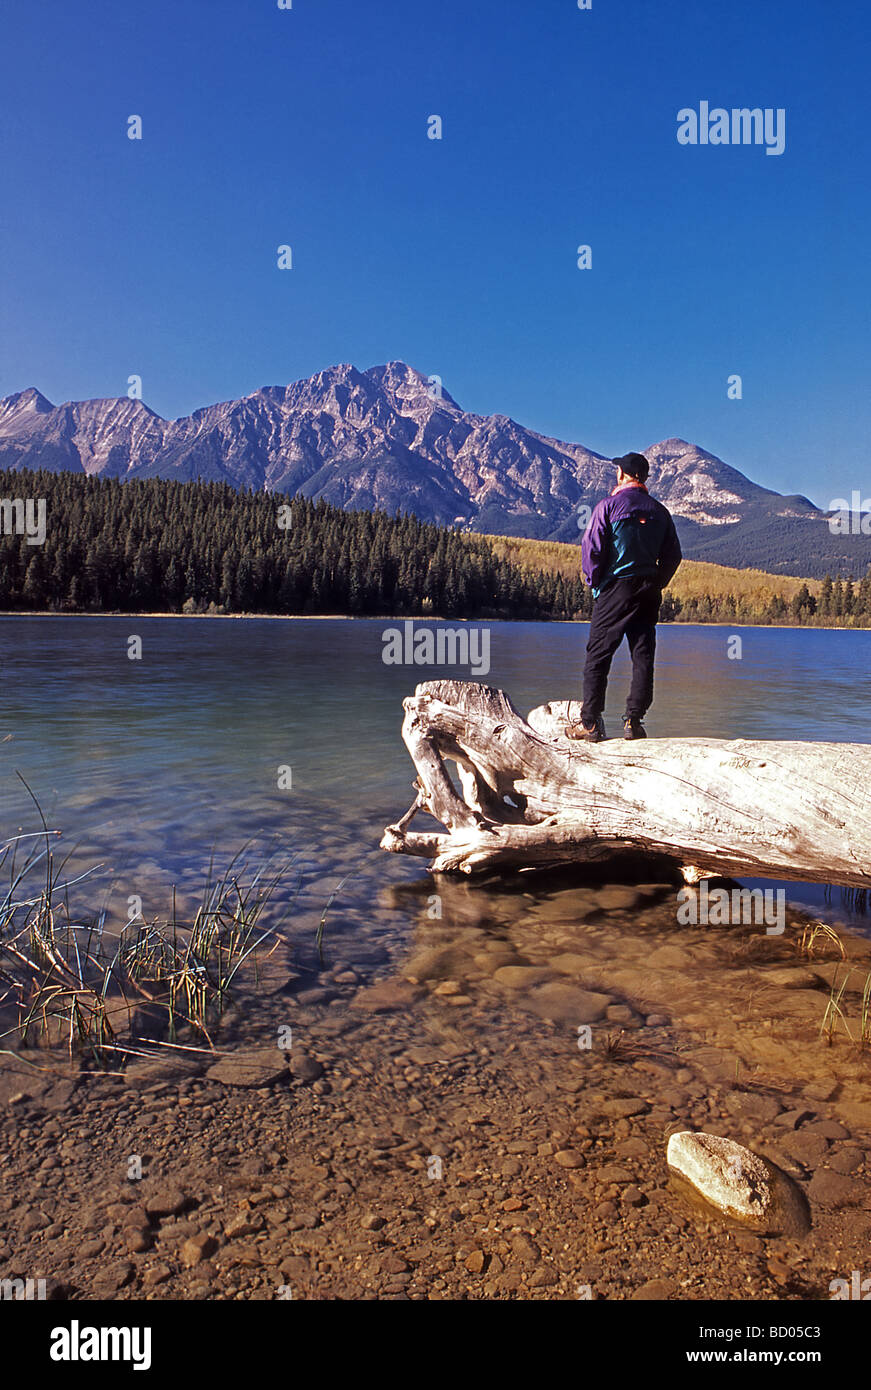 Escursionista in piedi sul registro Patricia affacciato sul lago e montagna piramidale del Parco Nazionale di Jasper Alberta Canada Foto Stock